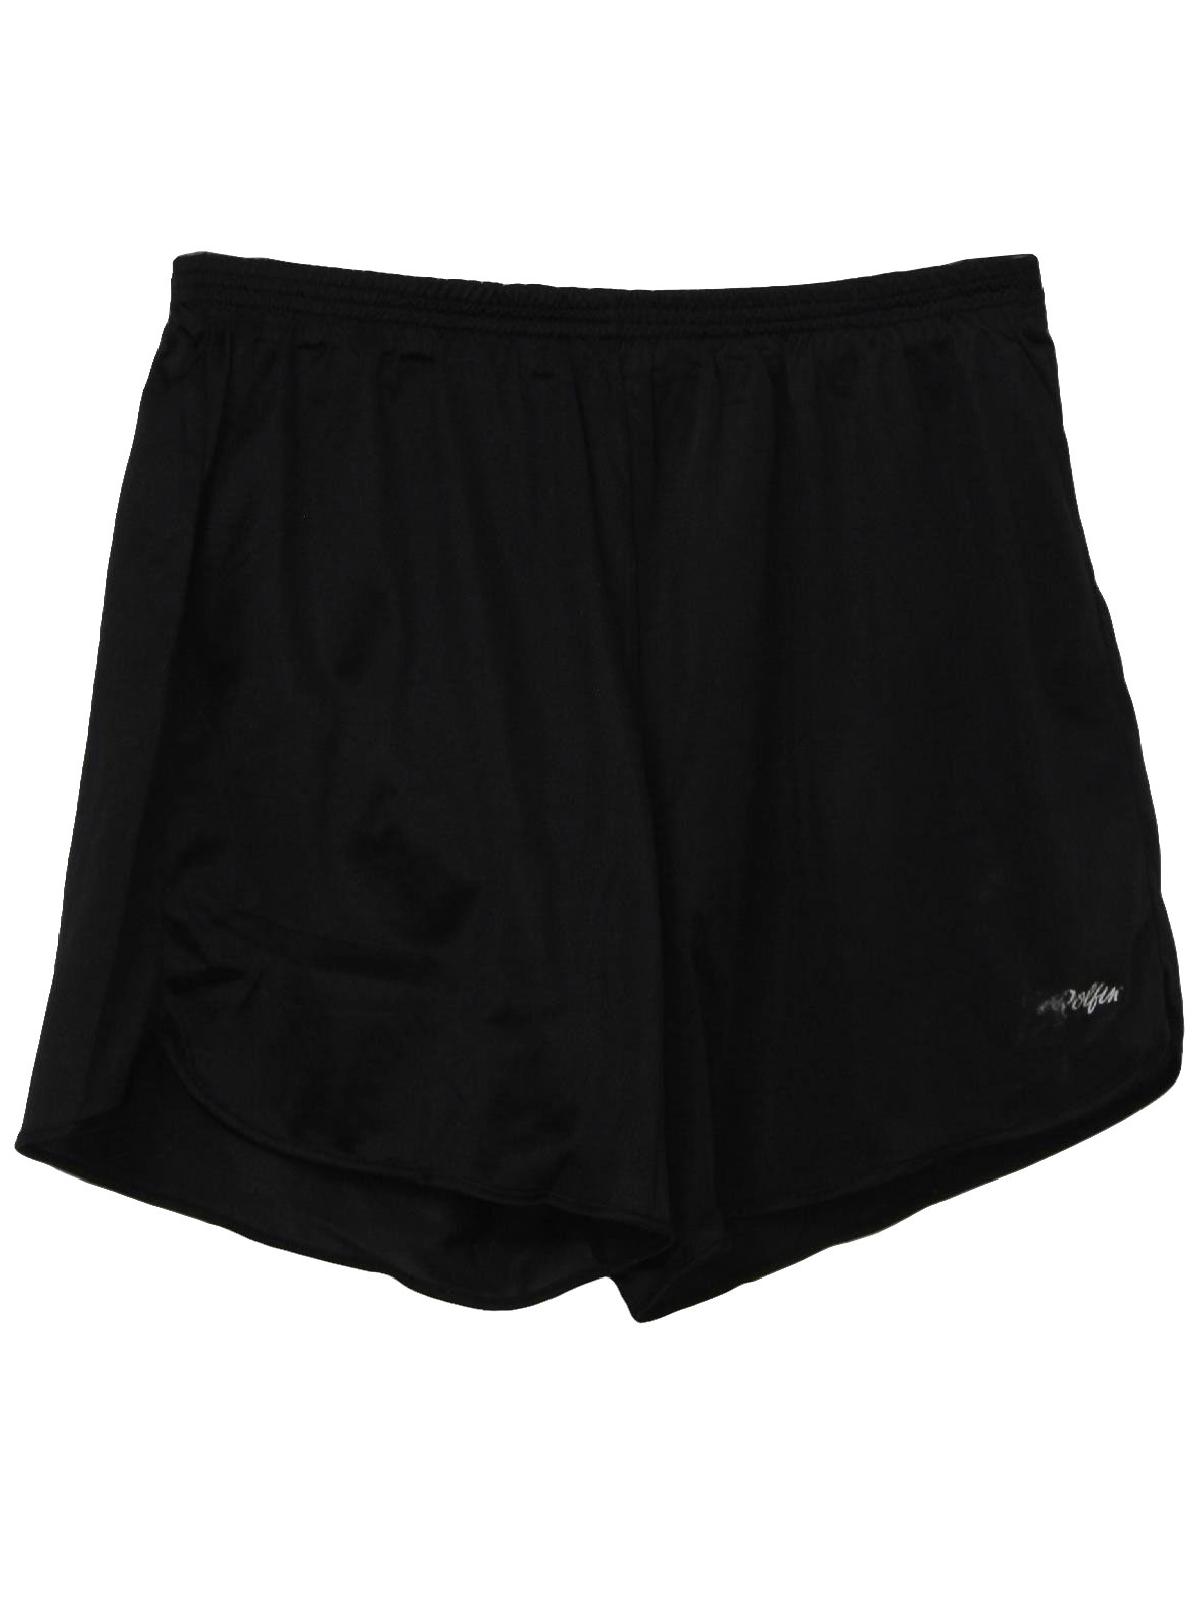 90's Vintage Shorts: 90s -Dolfin- Mens black background shimmery nylon ...